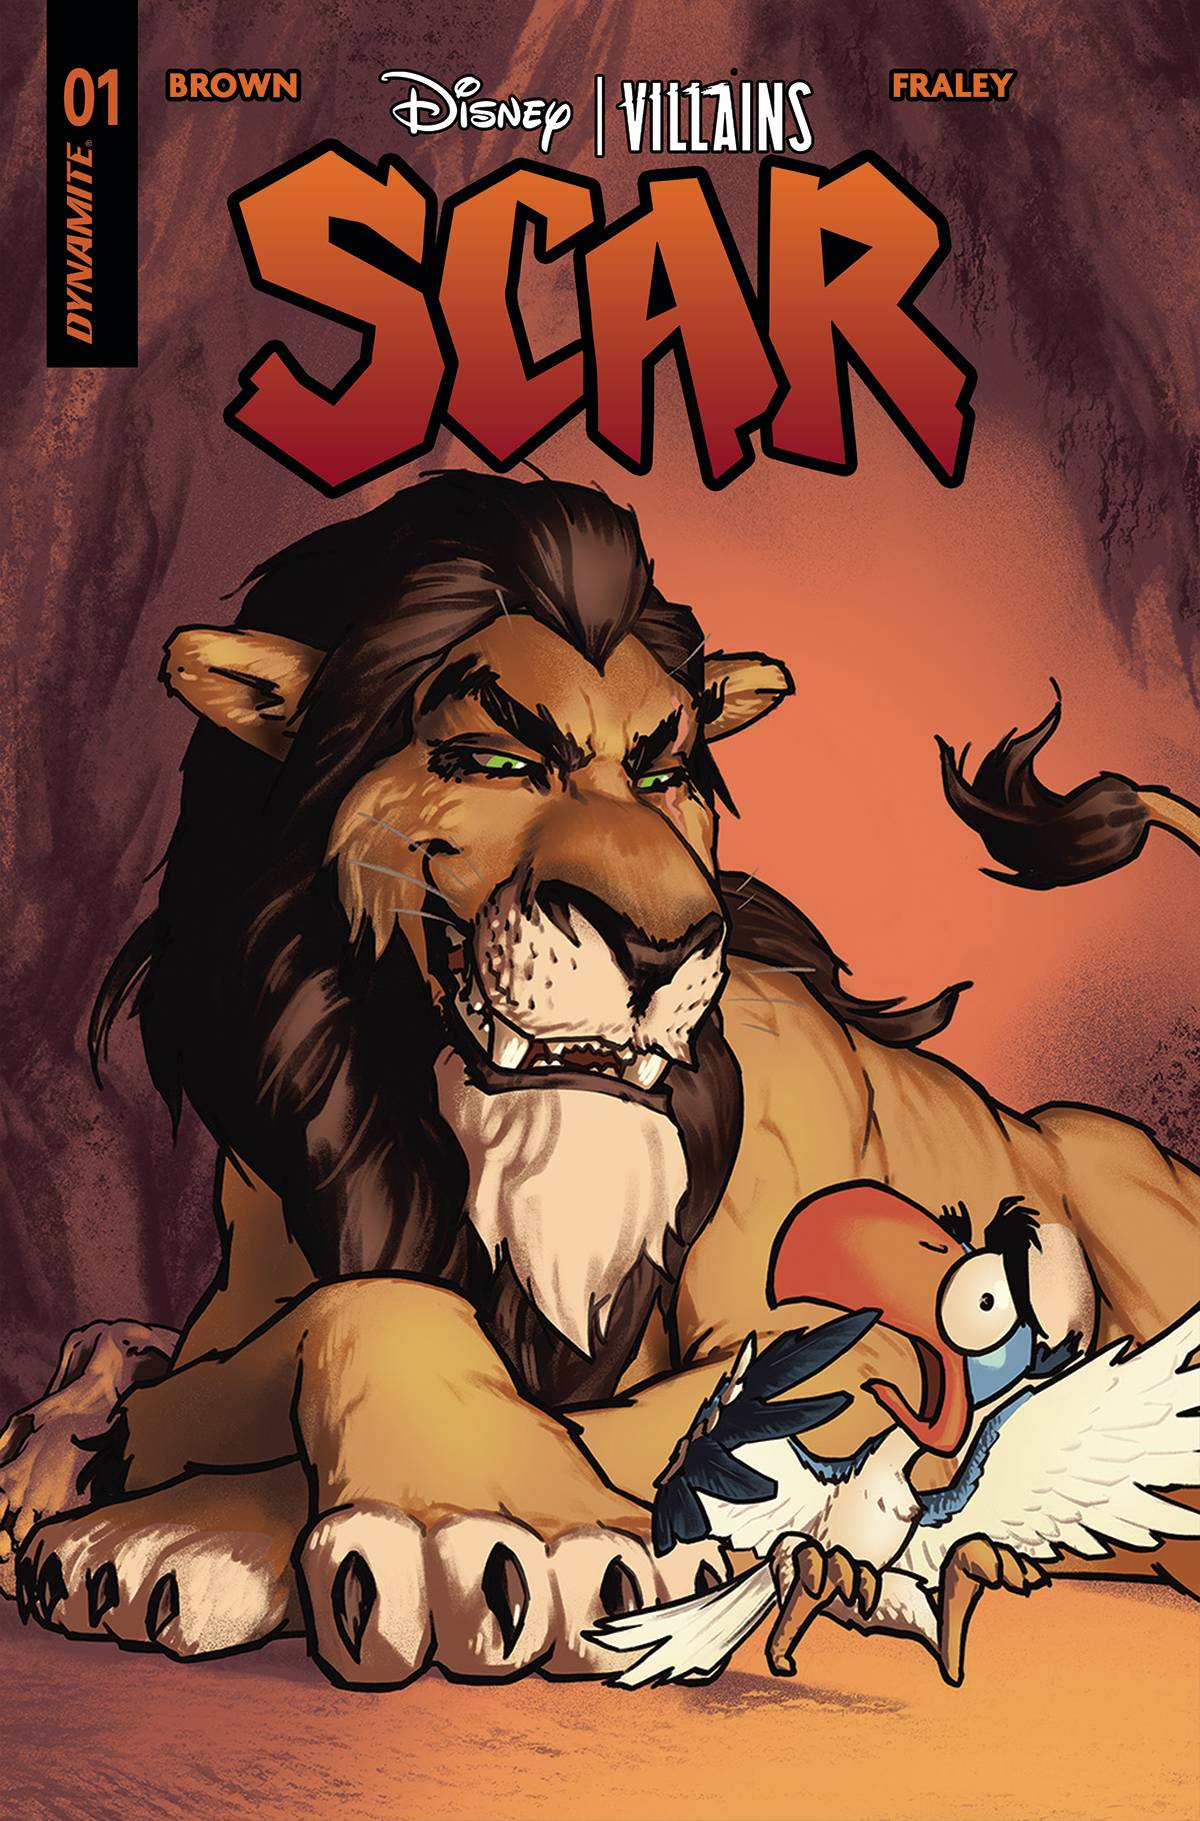 DISNEY VILLAINS SCAR #1 E Lion King by Gene Ha